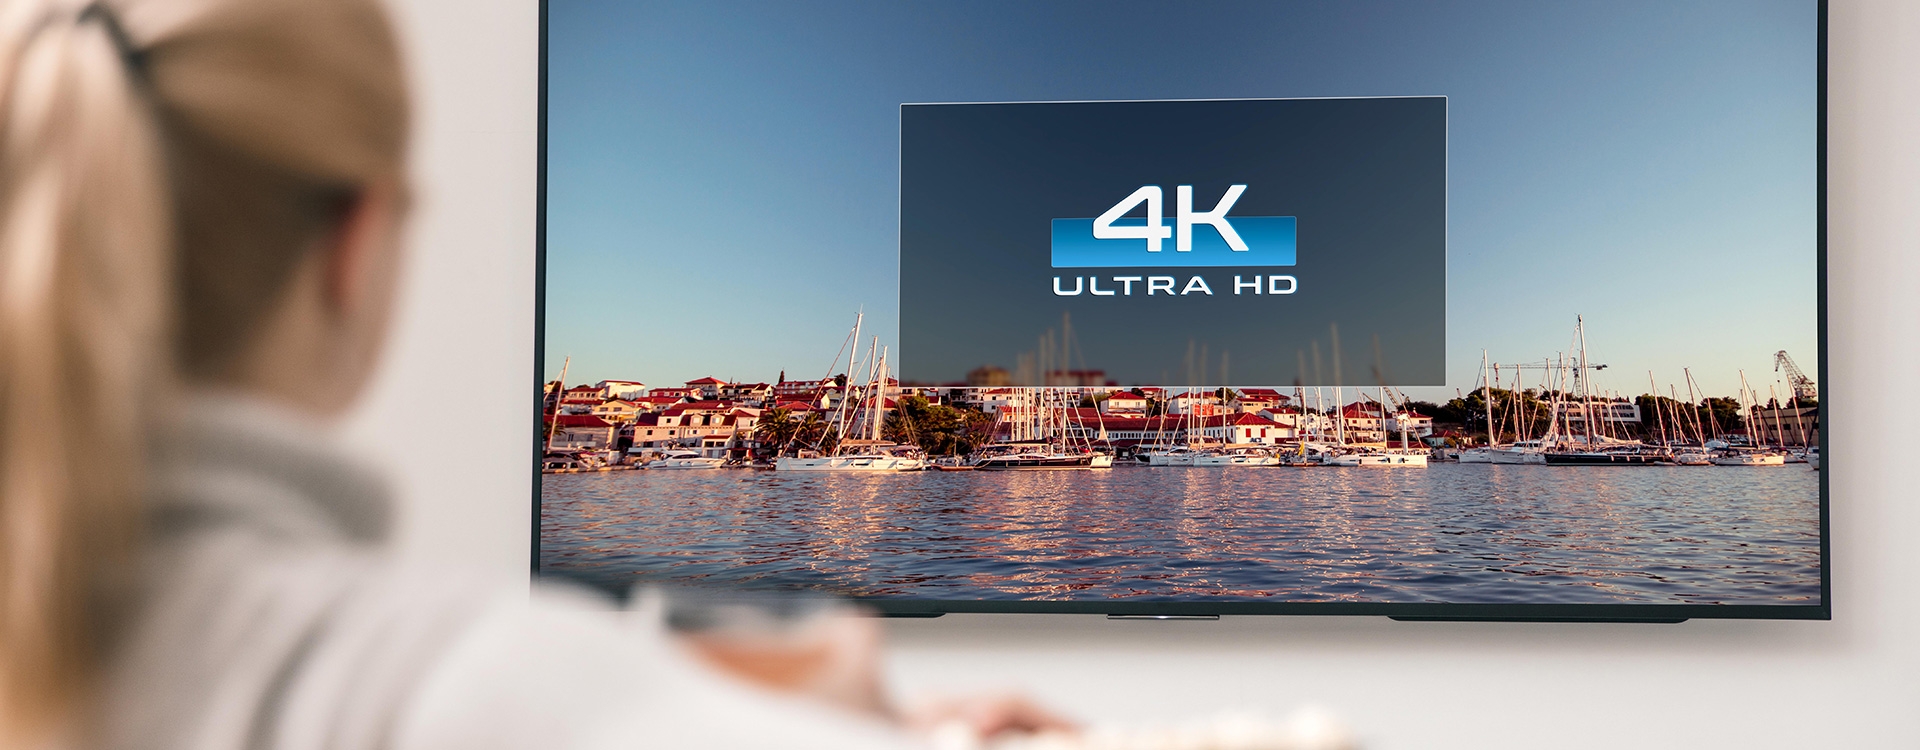 Porównanie projektorów 4K i telewizorów 4K: Który lepszy dla kina domowego?